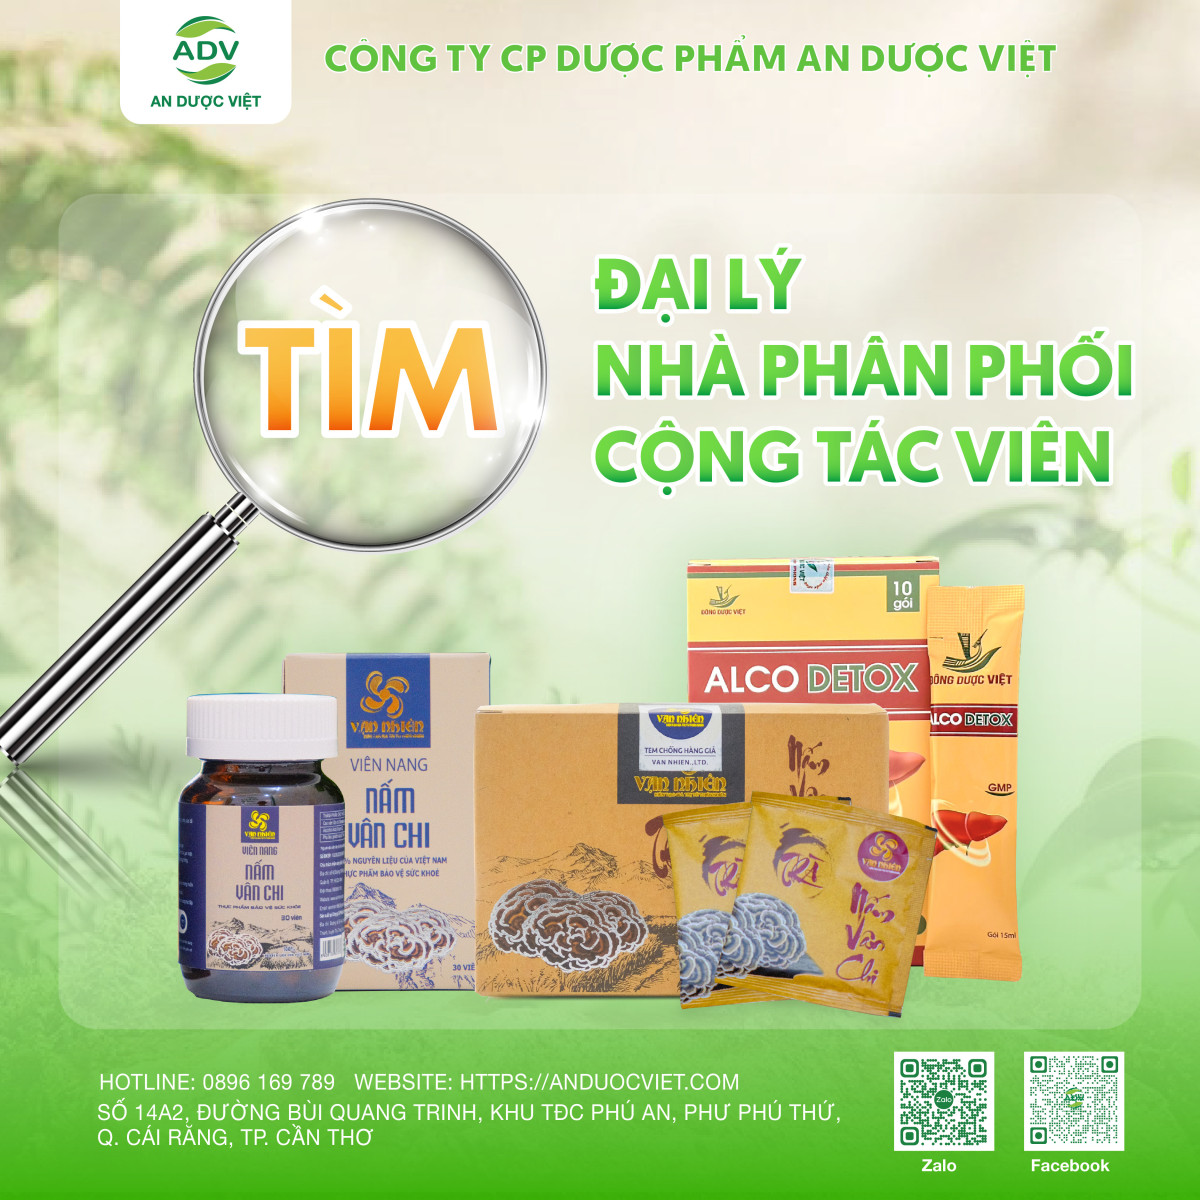 An Dược Việt: Tìm đối tác phân phối sản phẩm, chiết khấu hấp dẫn!